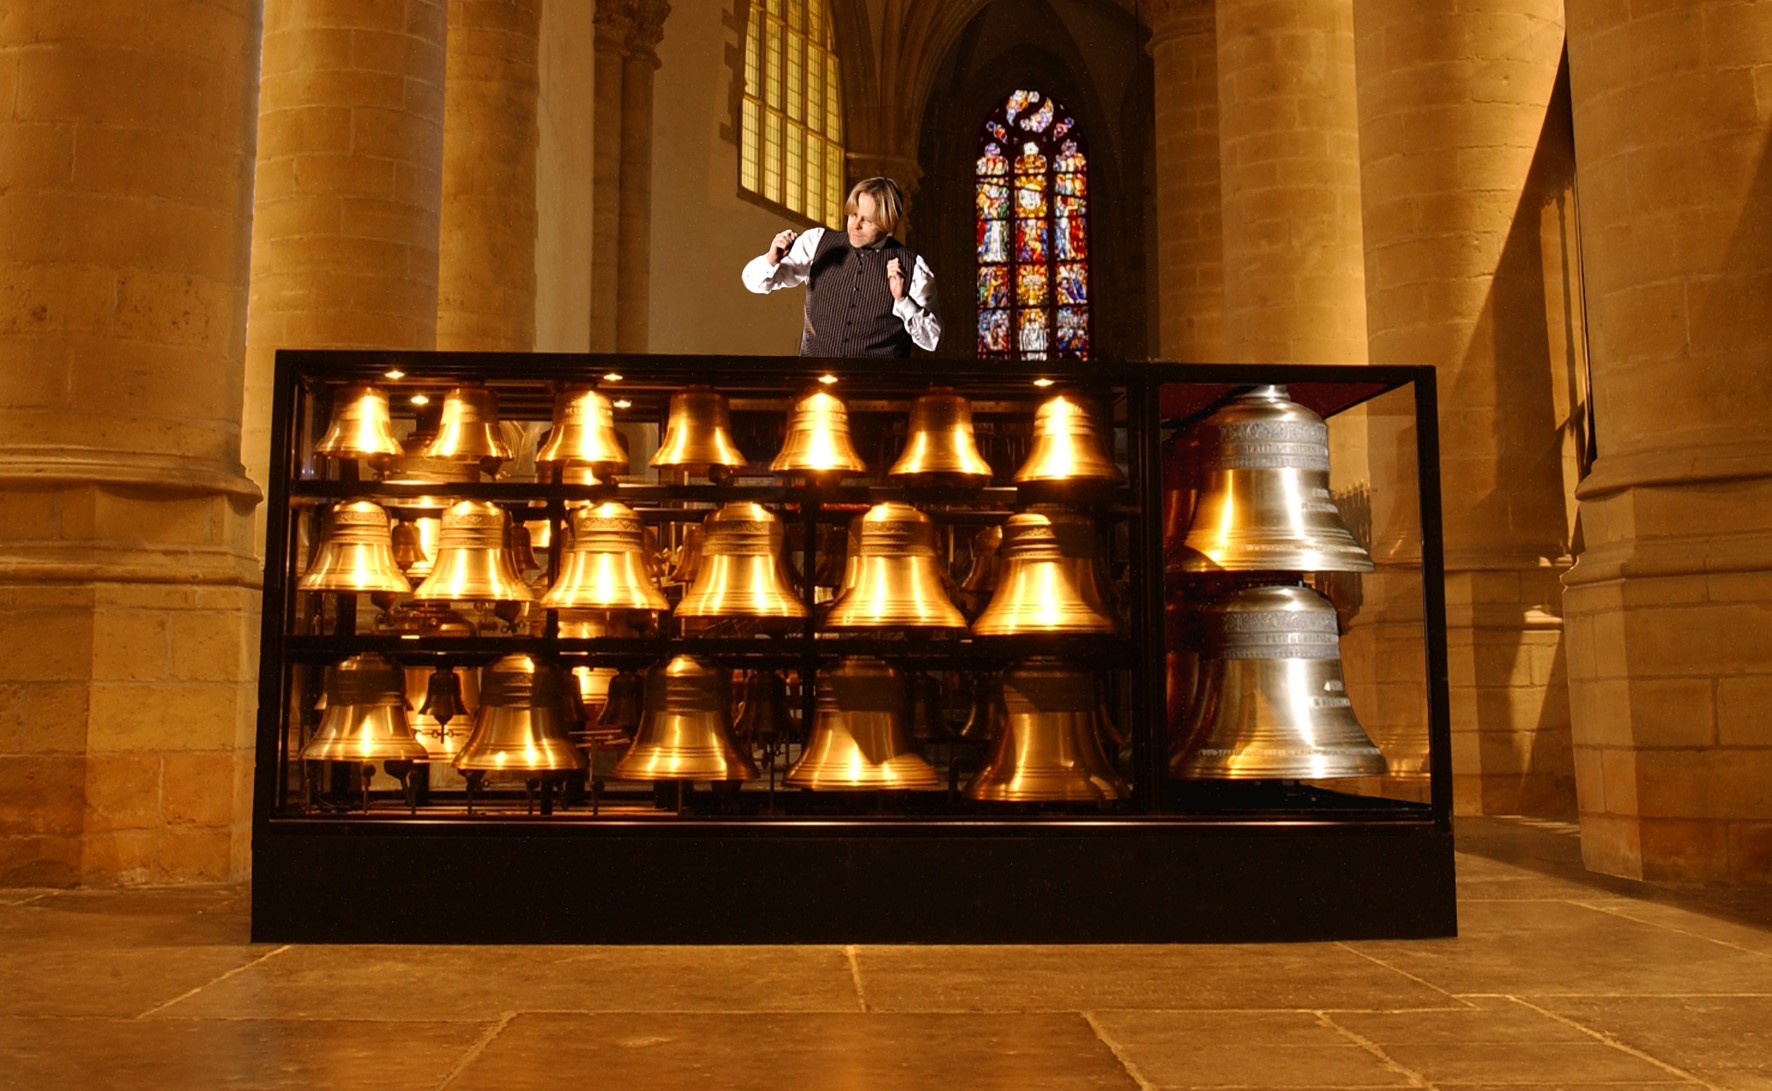 Orgel-carillonconcert met Lydia en Boudewijn Zwart